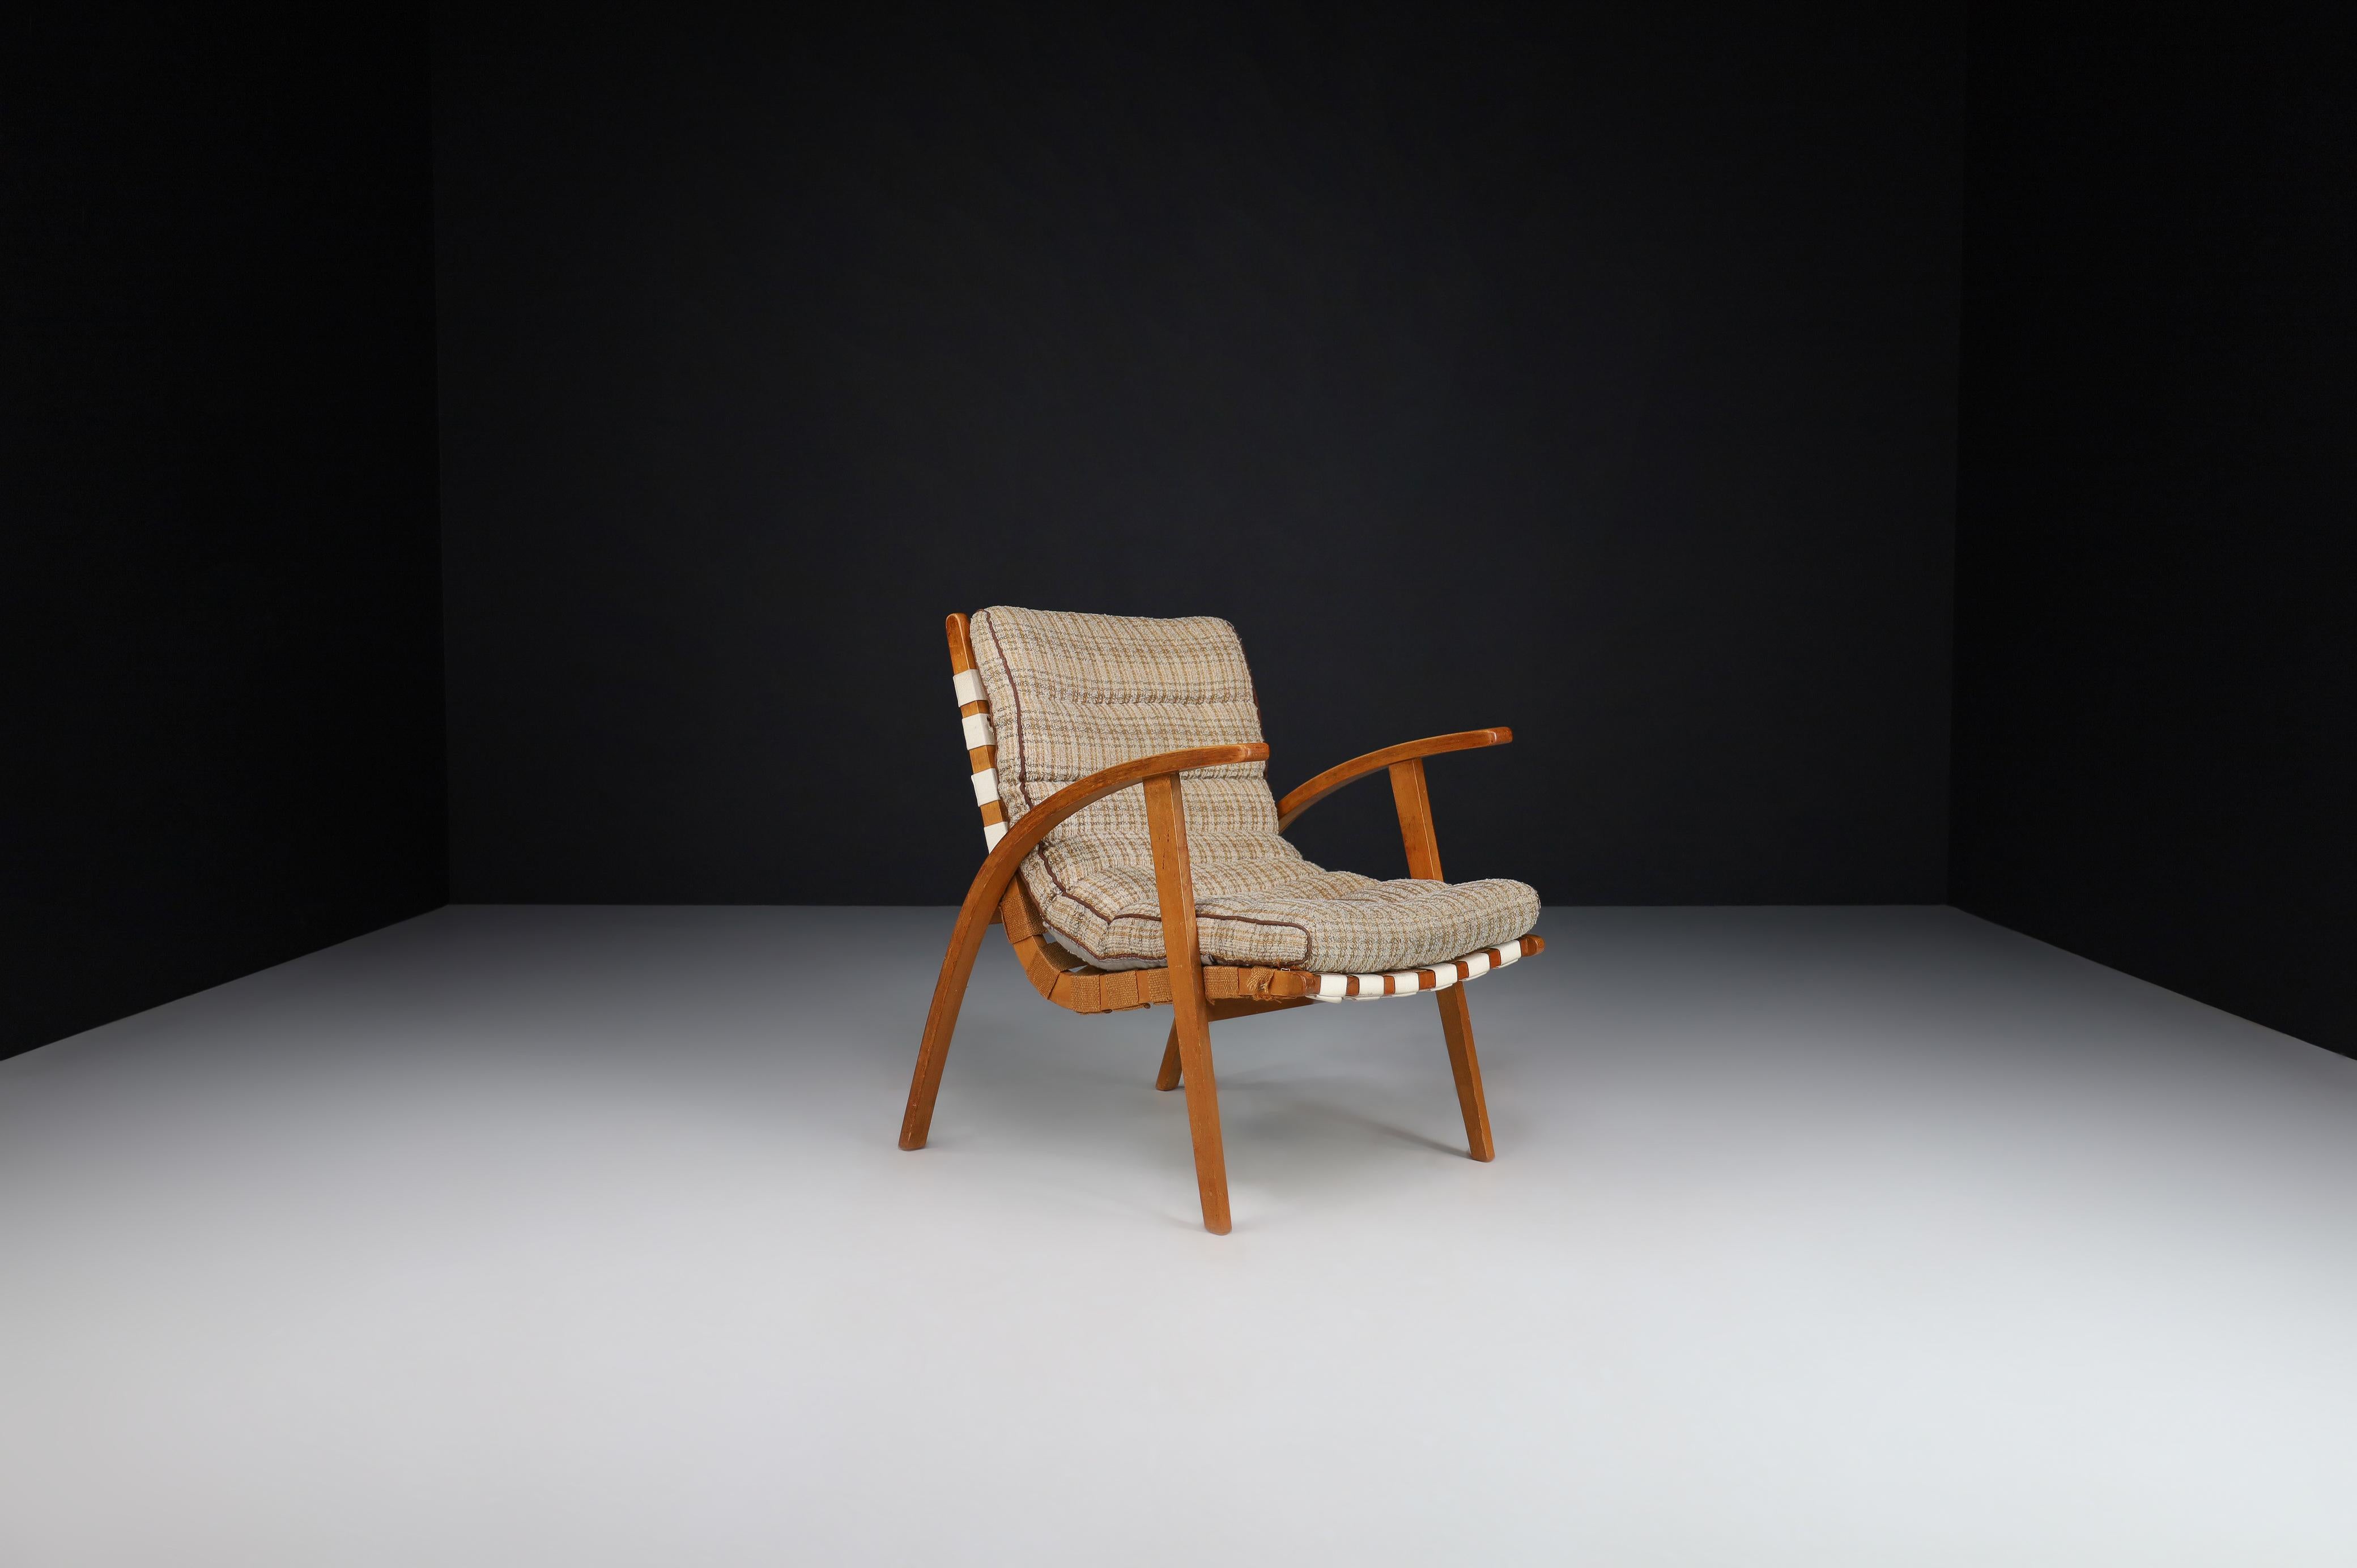 Fauteuil Jan Vanek en bois courbé et toile, Praque, années 1930

L'architecte tchèque Jan Vanek, contemporain de Jindrich Halabala, a conçu la chaise facile du Bauhaus dans les années 1930. Cette chaise est tapissée initialement d'une assise en